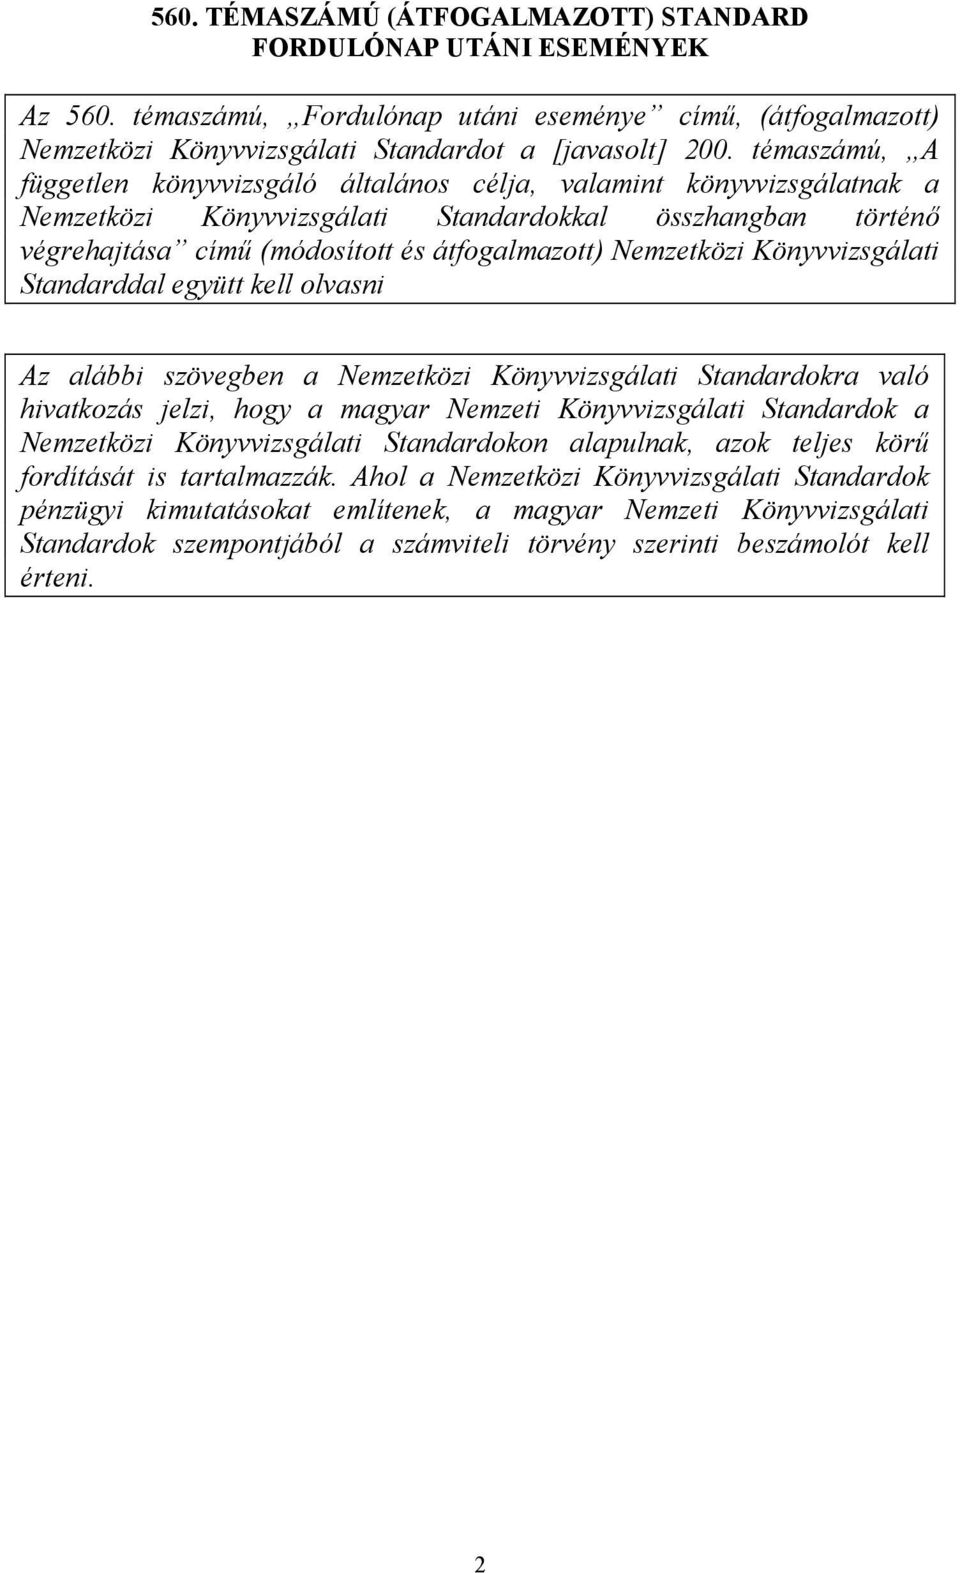 Nemzetközi Könyvvizsgálati Standarddal együtt kell olvasni Az alábbi szövegben a Nemzetközi Könyvvizsgálati Standardokra való hivatkozás jelzi, hogy a magyar Nemzeti Könyvvizsgálati Standardok a